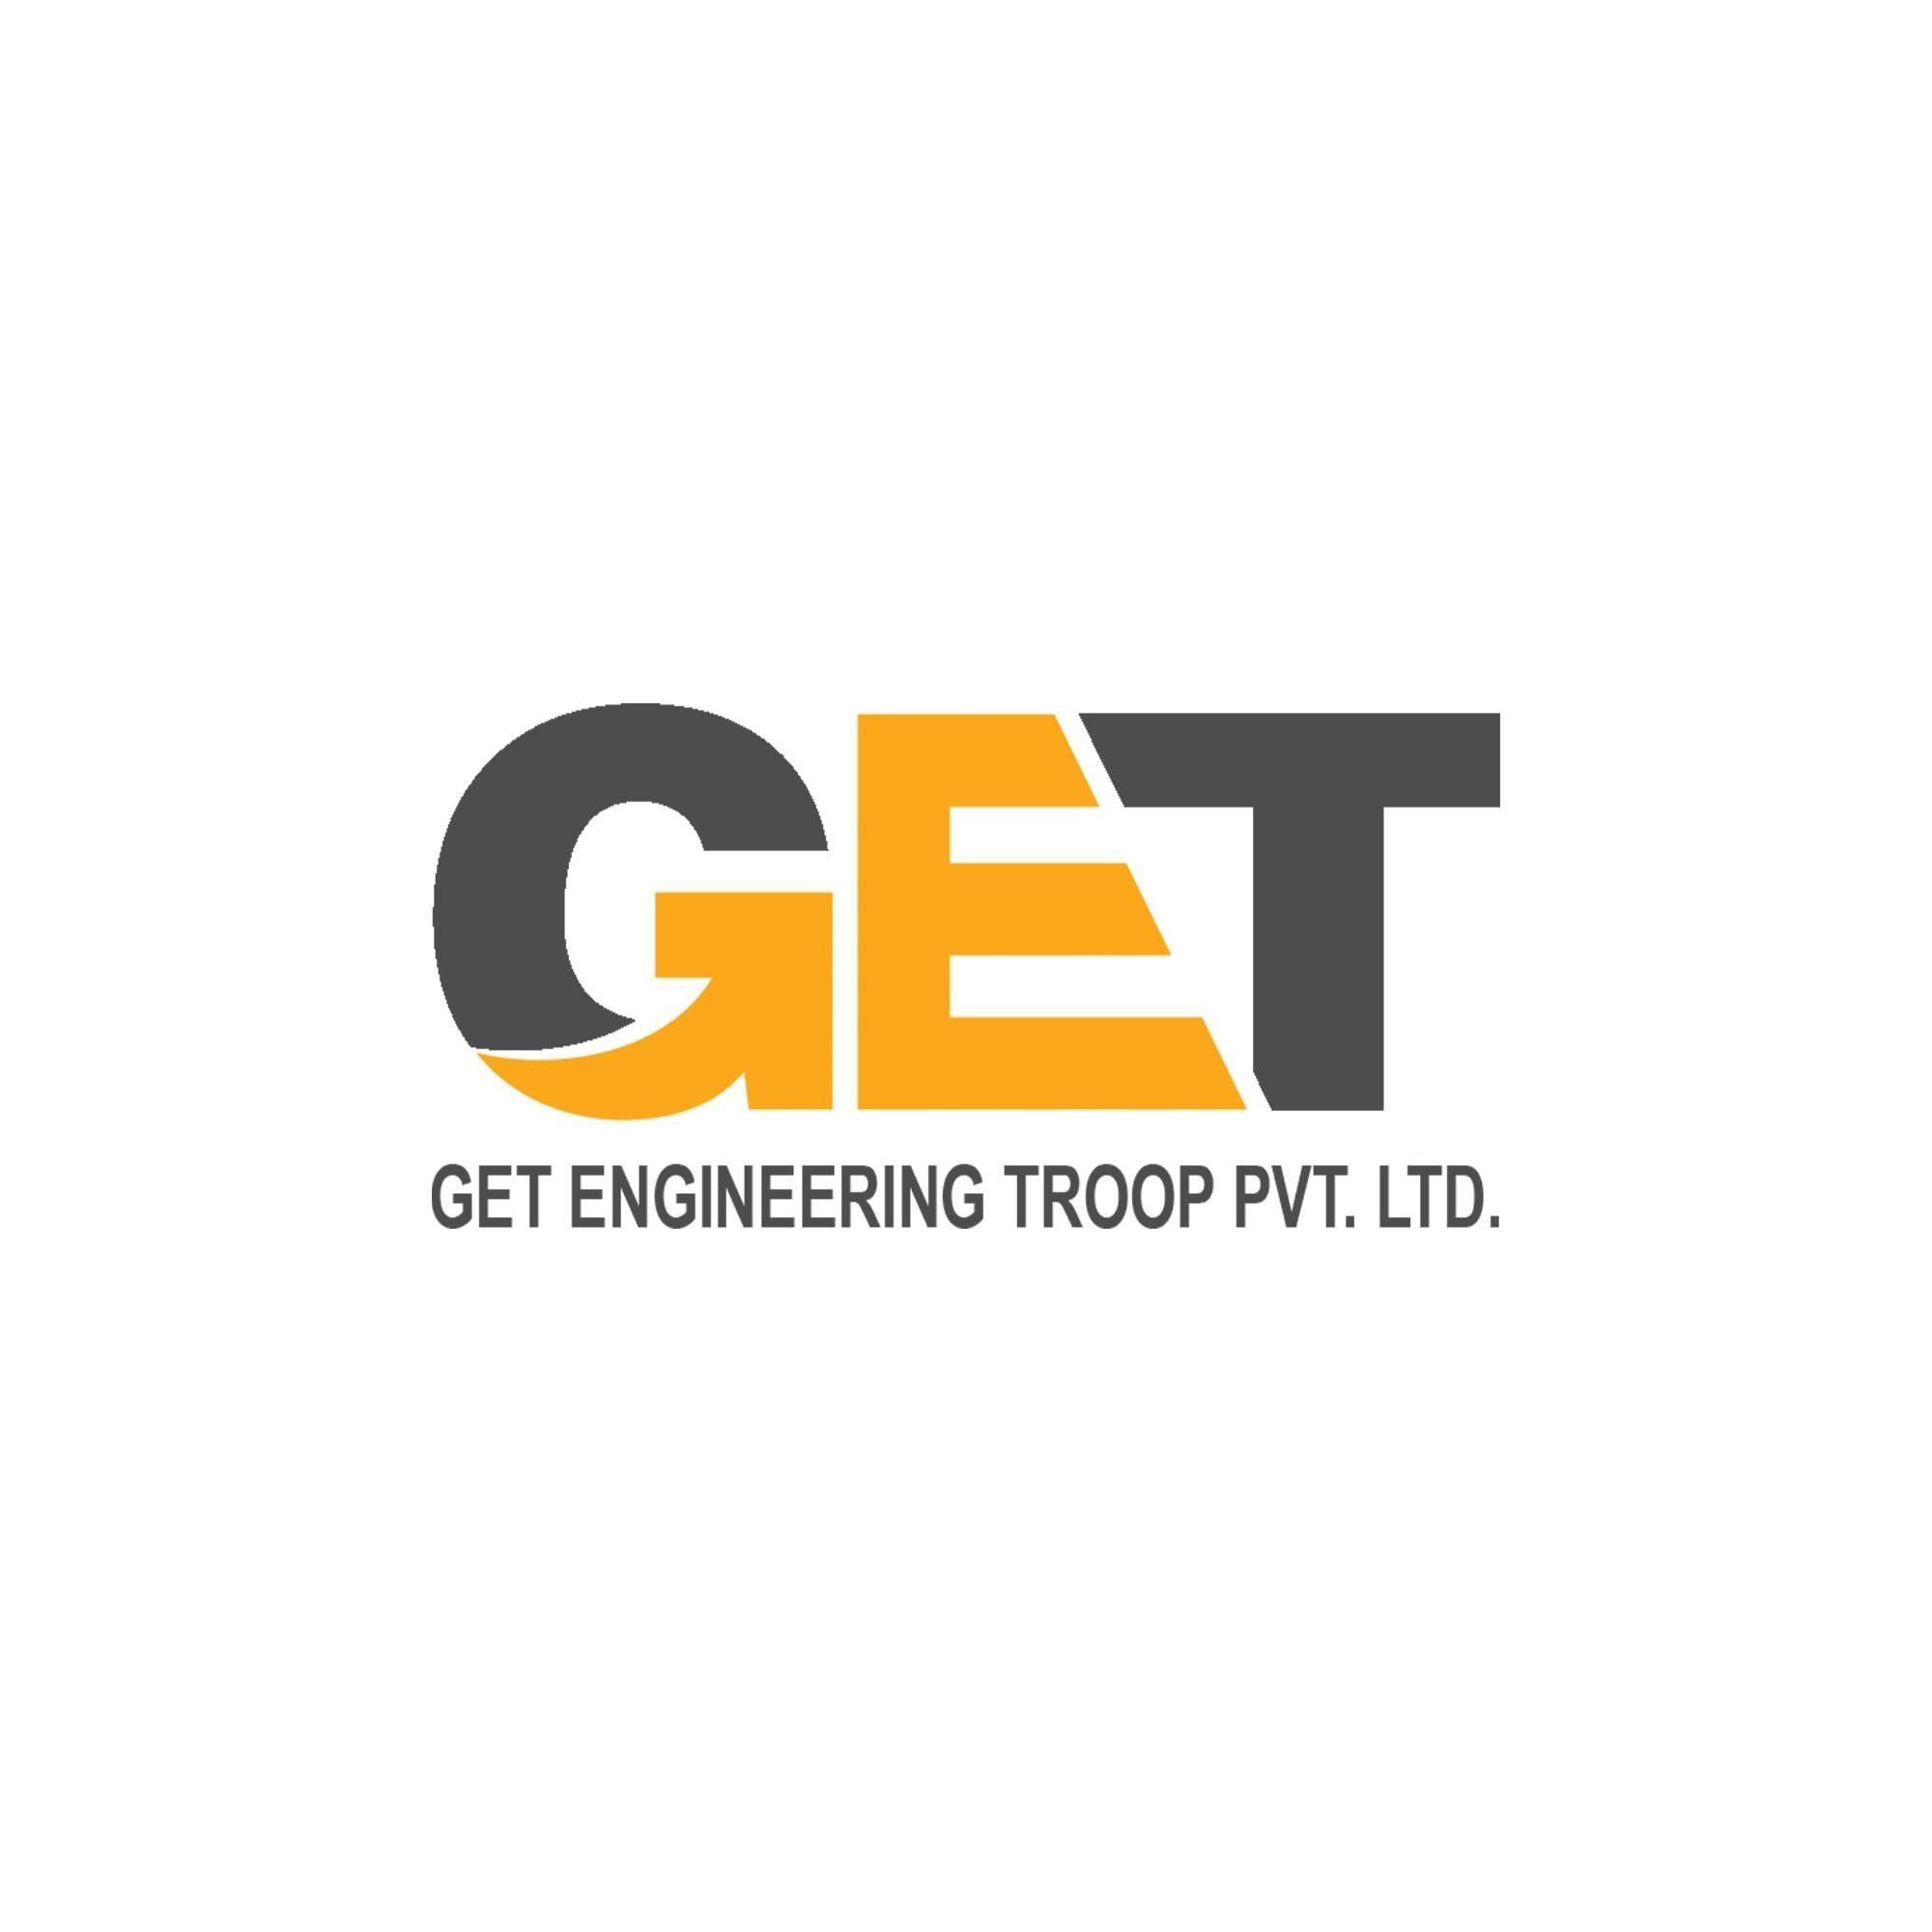 Get Engineering Troops Pvt. Ltd. logo